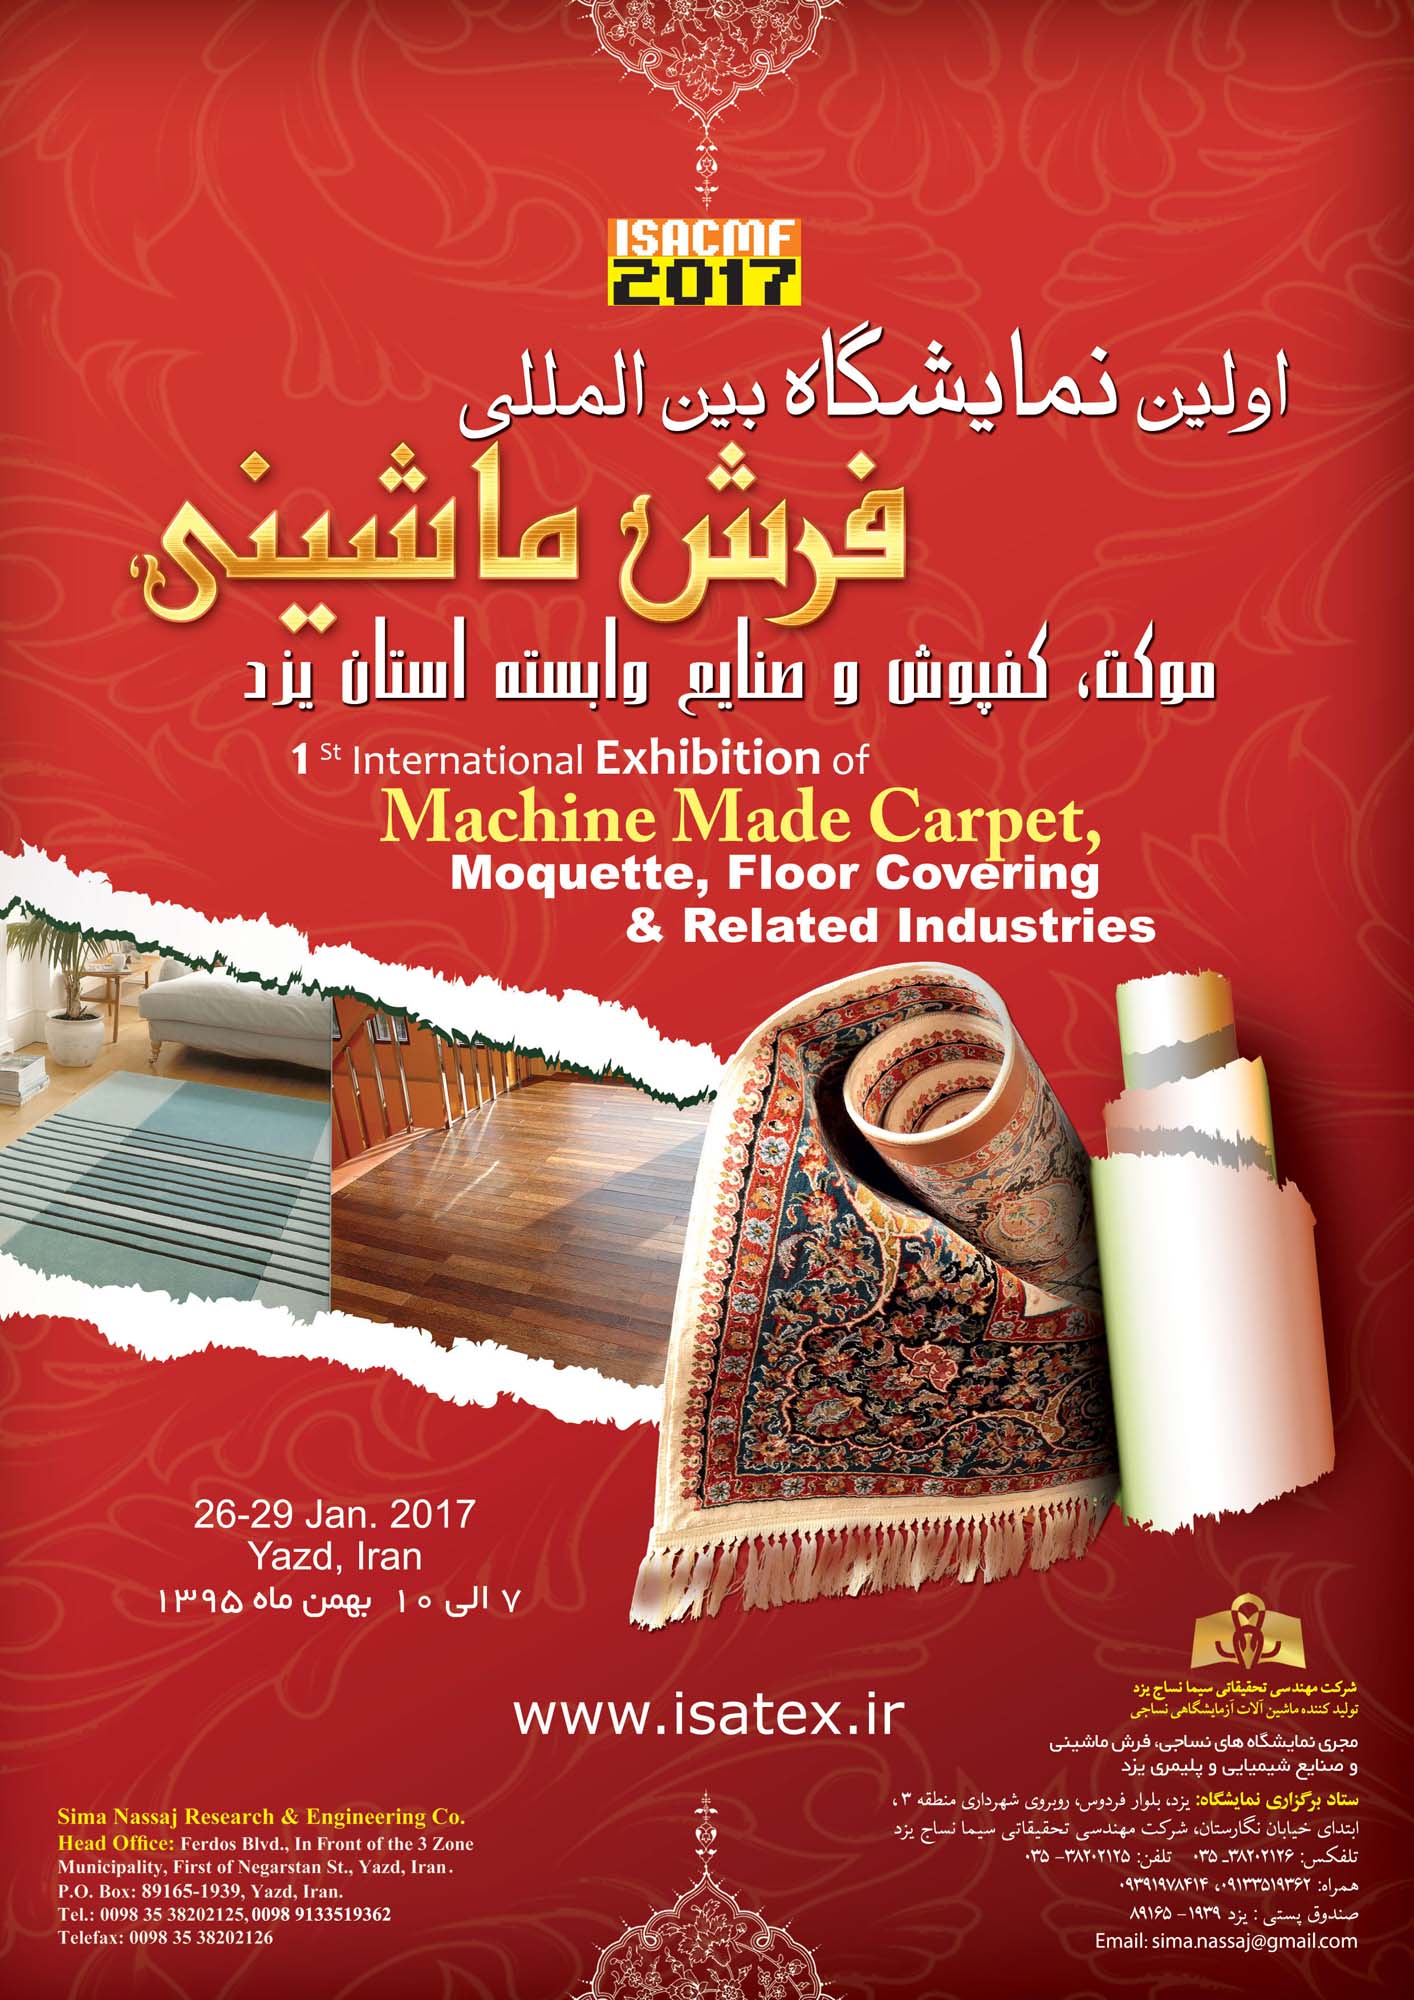 اولین نمایشگاه فرش ماشینی، موکت، کفپوش و صنایع وابسته در استان یزد